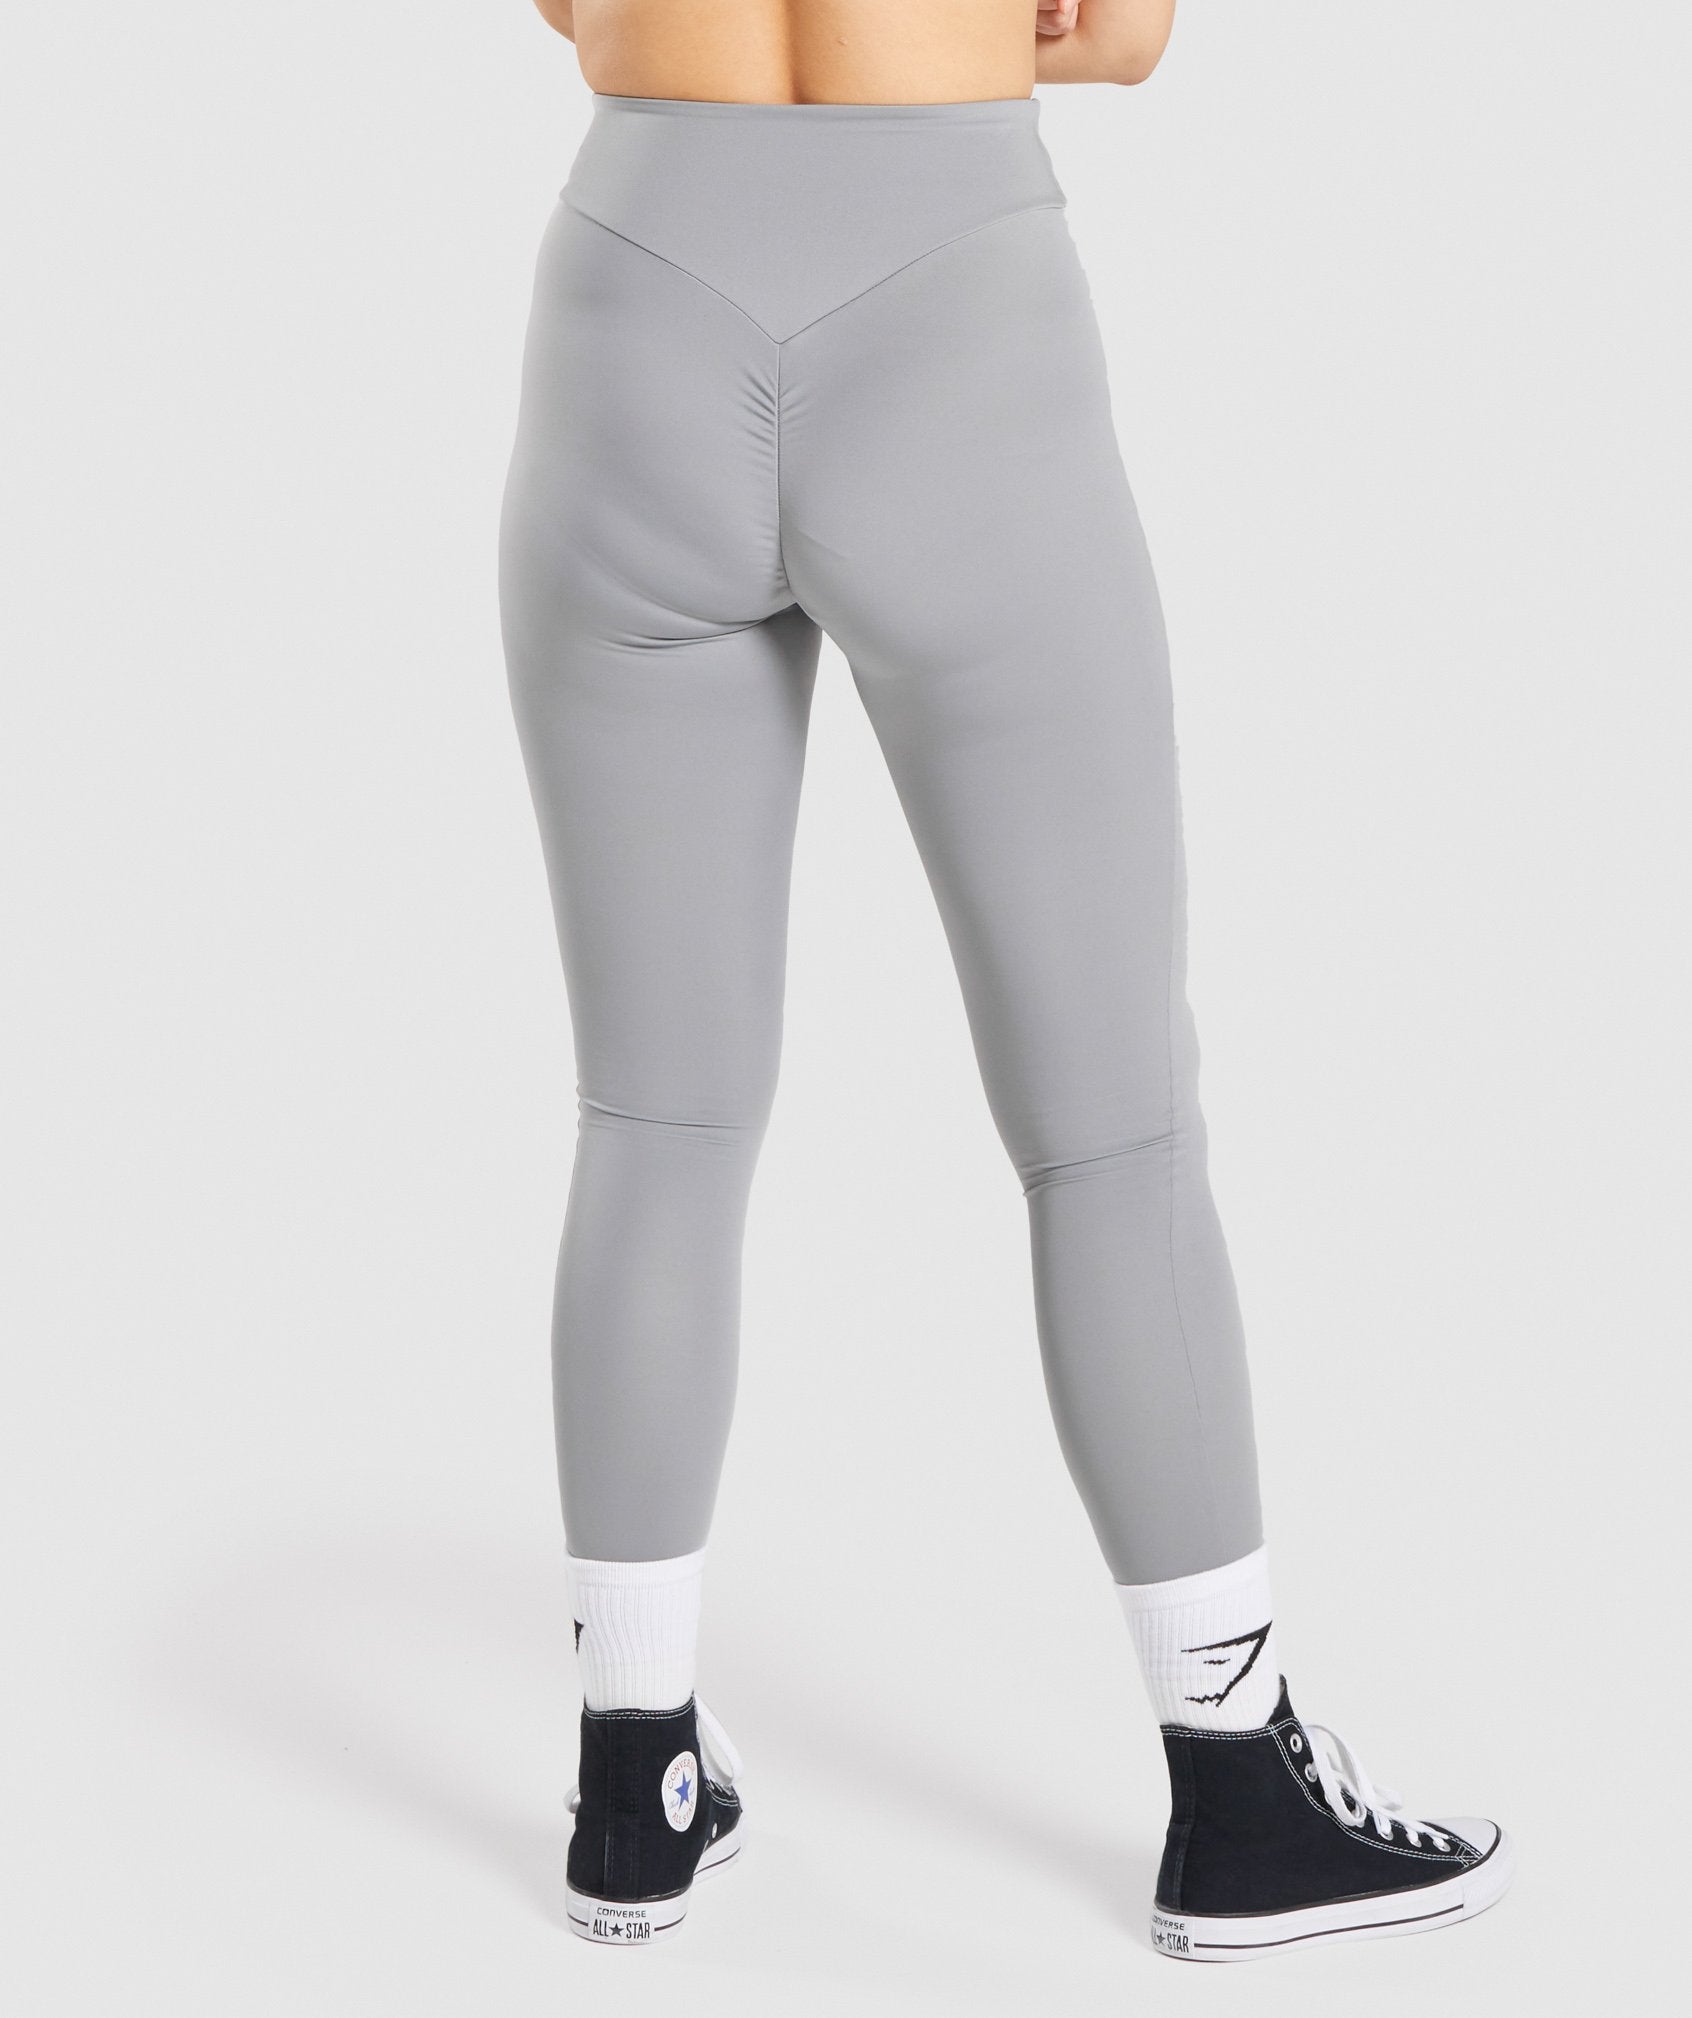 Cashel Foldover Powerform Legging - shadow  Perfect leggings, Active wear  for women, Gymshark fit leggings